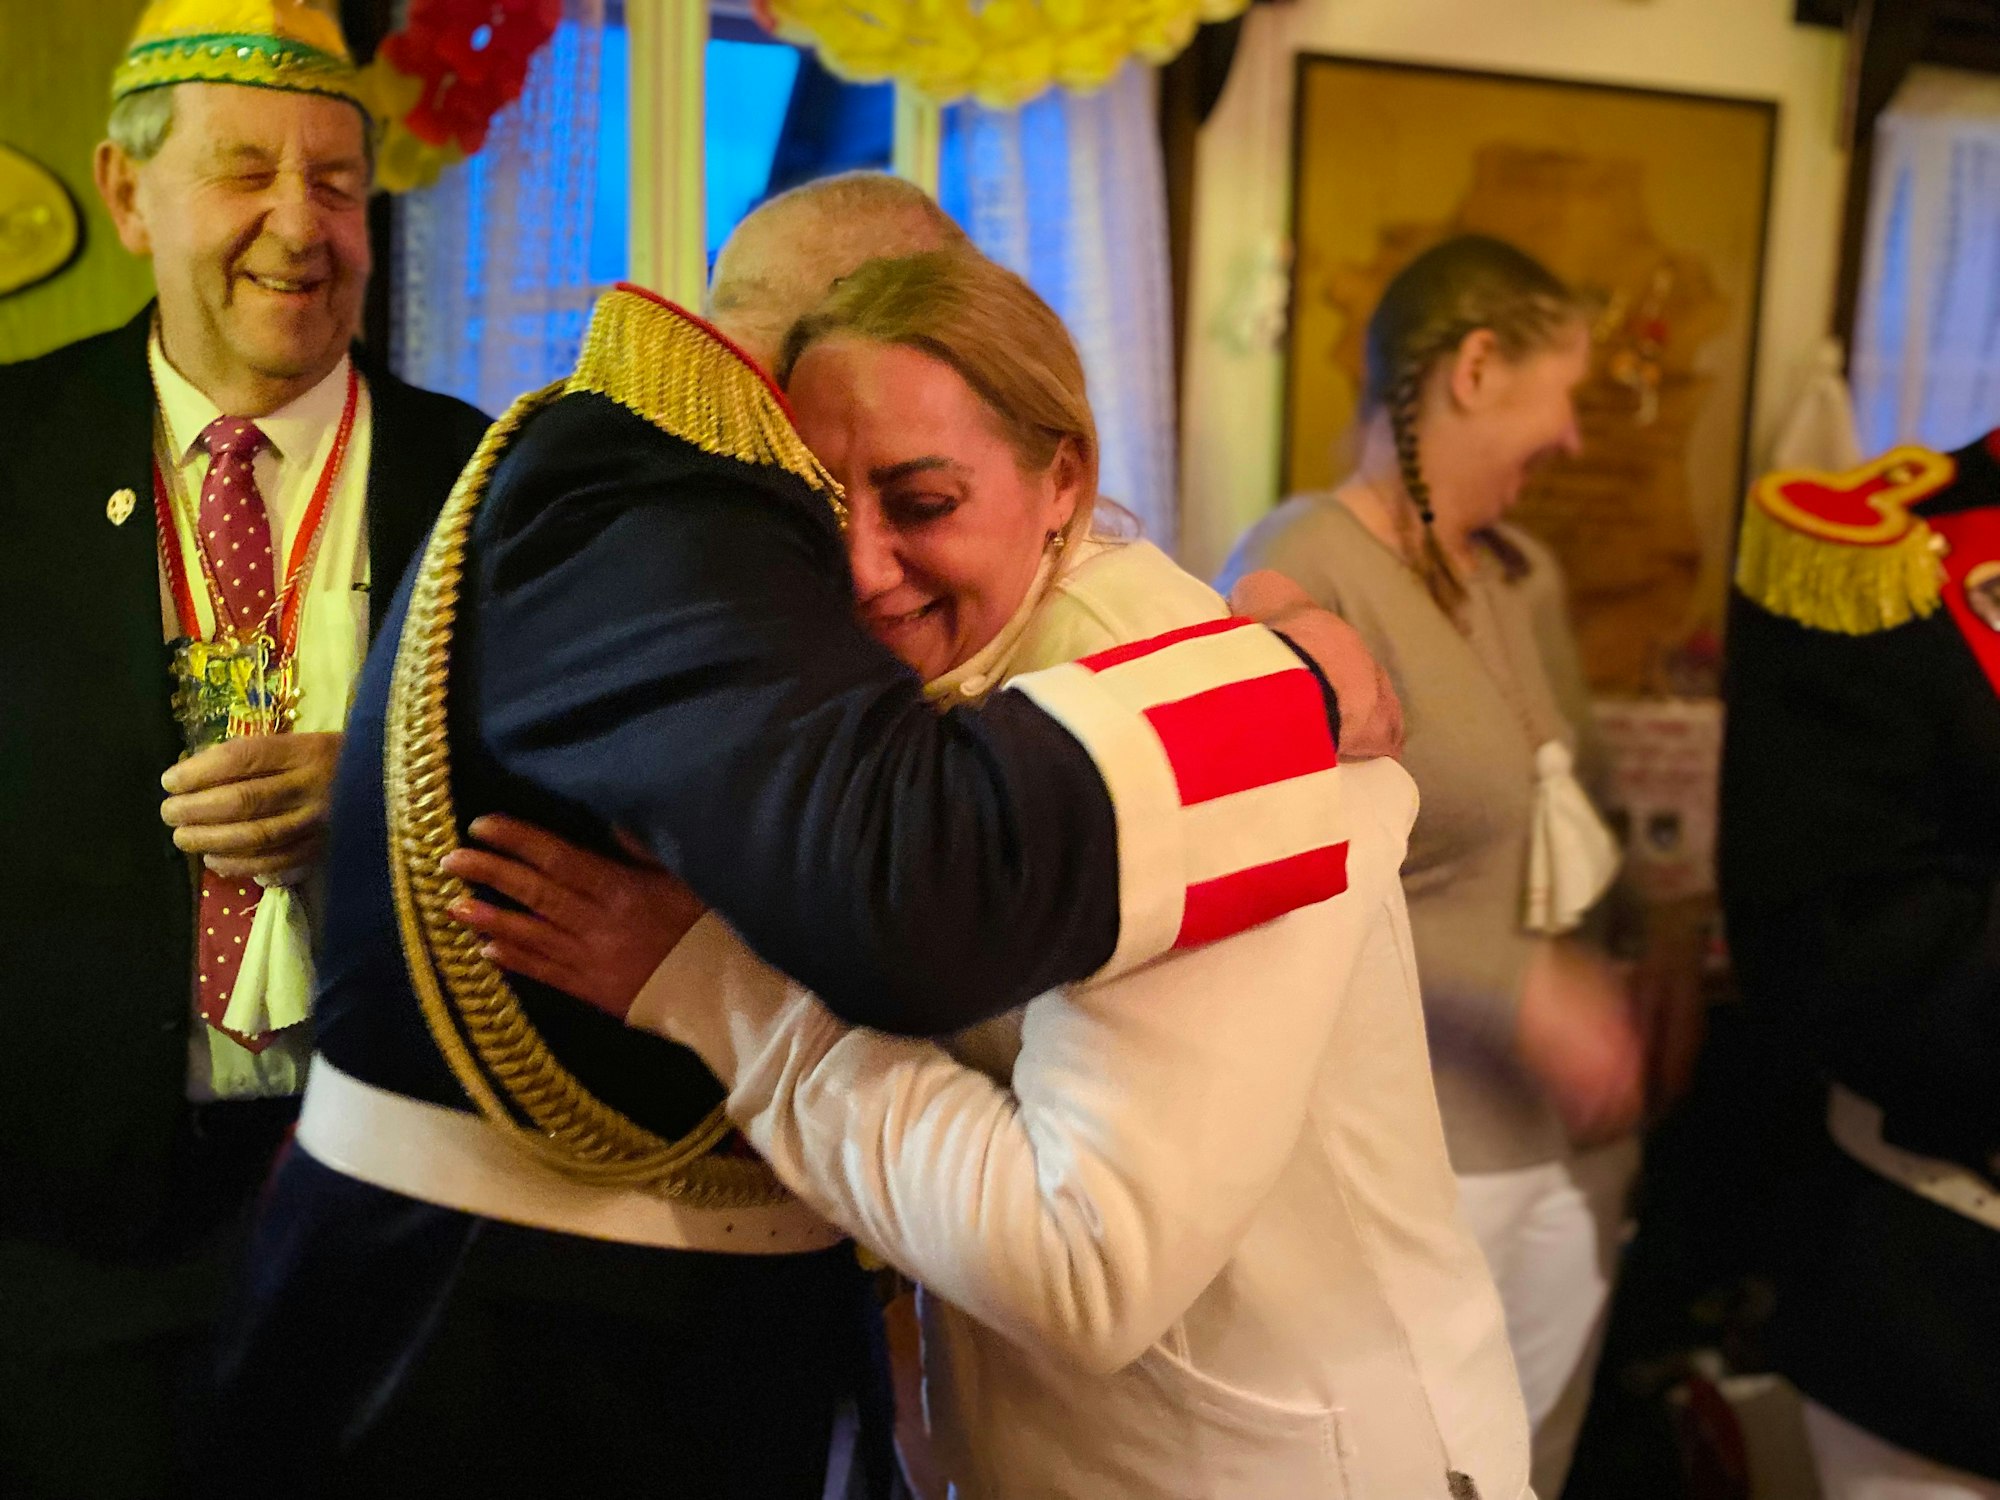 Blankenheimer Karnevalisten in dunklen Jacken stehen bei Prinzessin Dilek, die als Obergeist in Weiß gekleidet ist. Ein Mann umarmt sie.